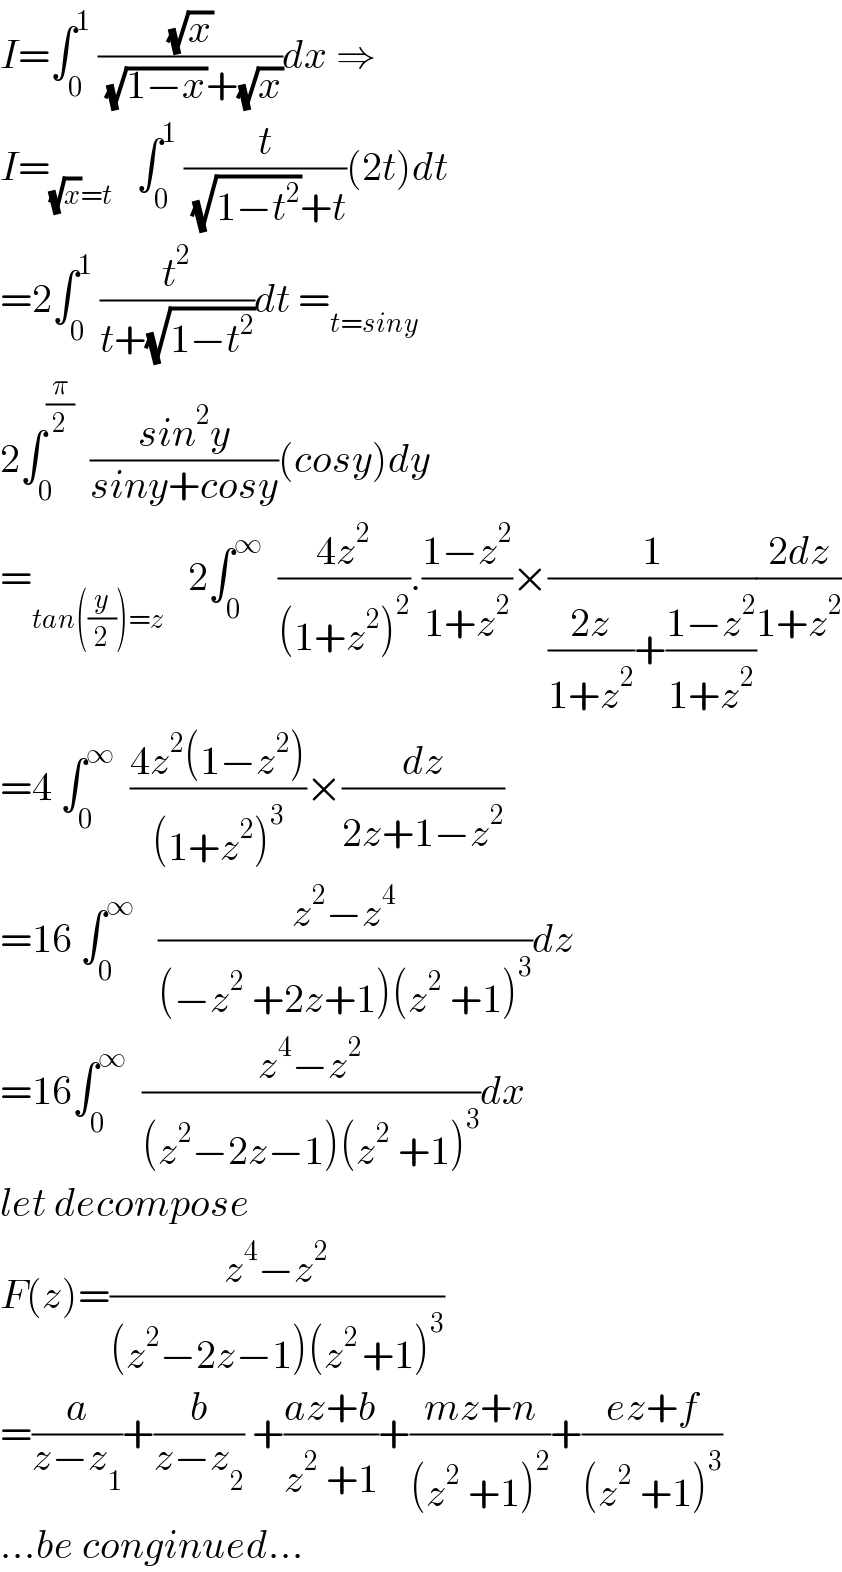 I=∫_0 ^1  ((√x)/( (√(1−x))+(√x)))dx ⇒  I=_((√x)=t)    ∫_0 ^1  (t/( (√(1−t^2 ))+t))(2t)dt  =2∫_0 ^1  (t^2 /(t+(√(1−t^2 ))))dt =_(t=siny)   2∫_0 ^(π/2)   ((sin^2 y)/(siny+cosy))(cosy)dy  =_(tan((y/2))=z)    2∫_0 ^∞   ((4z^2 )/((1+z^2 )^2 )).((1−z^2 )/(1+z^2 ))×(1/(((2z)/(1+z^2 ))+((1−z^2 )/(1+z^2 ))))((2dz)/(1+z^2 ))  =4 ∫_0 ^∞   ((4z^2 (1−z^2 ))/((1+z^2 )^3 ))×(dz/(2z+1−z^2 ))  =16 ∫_0 ^∞    ((z^2 −z^4 )/((−z^2  +2z+1)(z^2  +1)^3 ))dz  =16∫_0 ^∞   ((z^4 −z^2 )/((z^2 −2z−1)(z^2  +1)^3 ))dx  let decompose  F(z)=((z^4 −z^2 )/((z^2 −2z−1)(z^(2 ) +1)^3 ))  =(a/(z−z_1 ))+(b/(z−z_2 )) +((az+b)/(z^2  +1))+((mz+n)/((z^2  +1)^2 ))+((ez+f)/((z^2  +1)^3 ))  ...be conginued...  